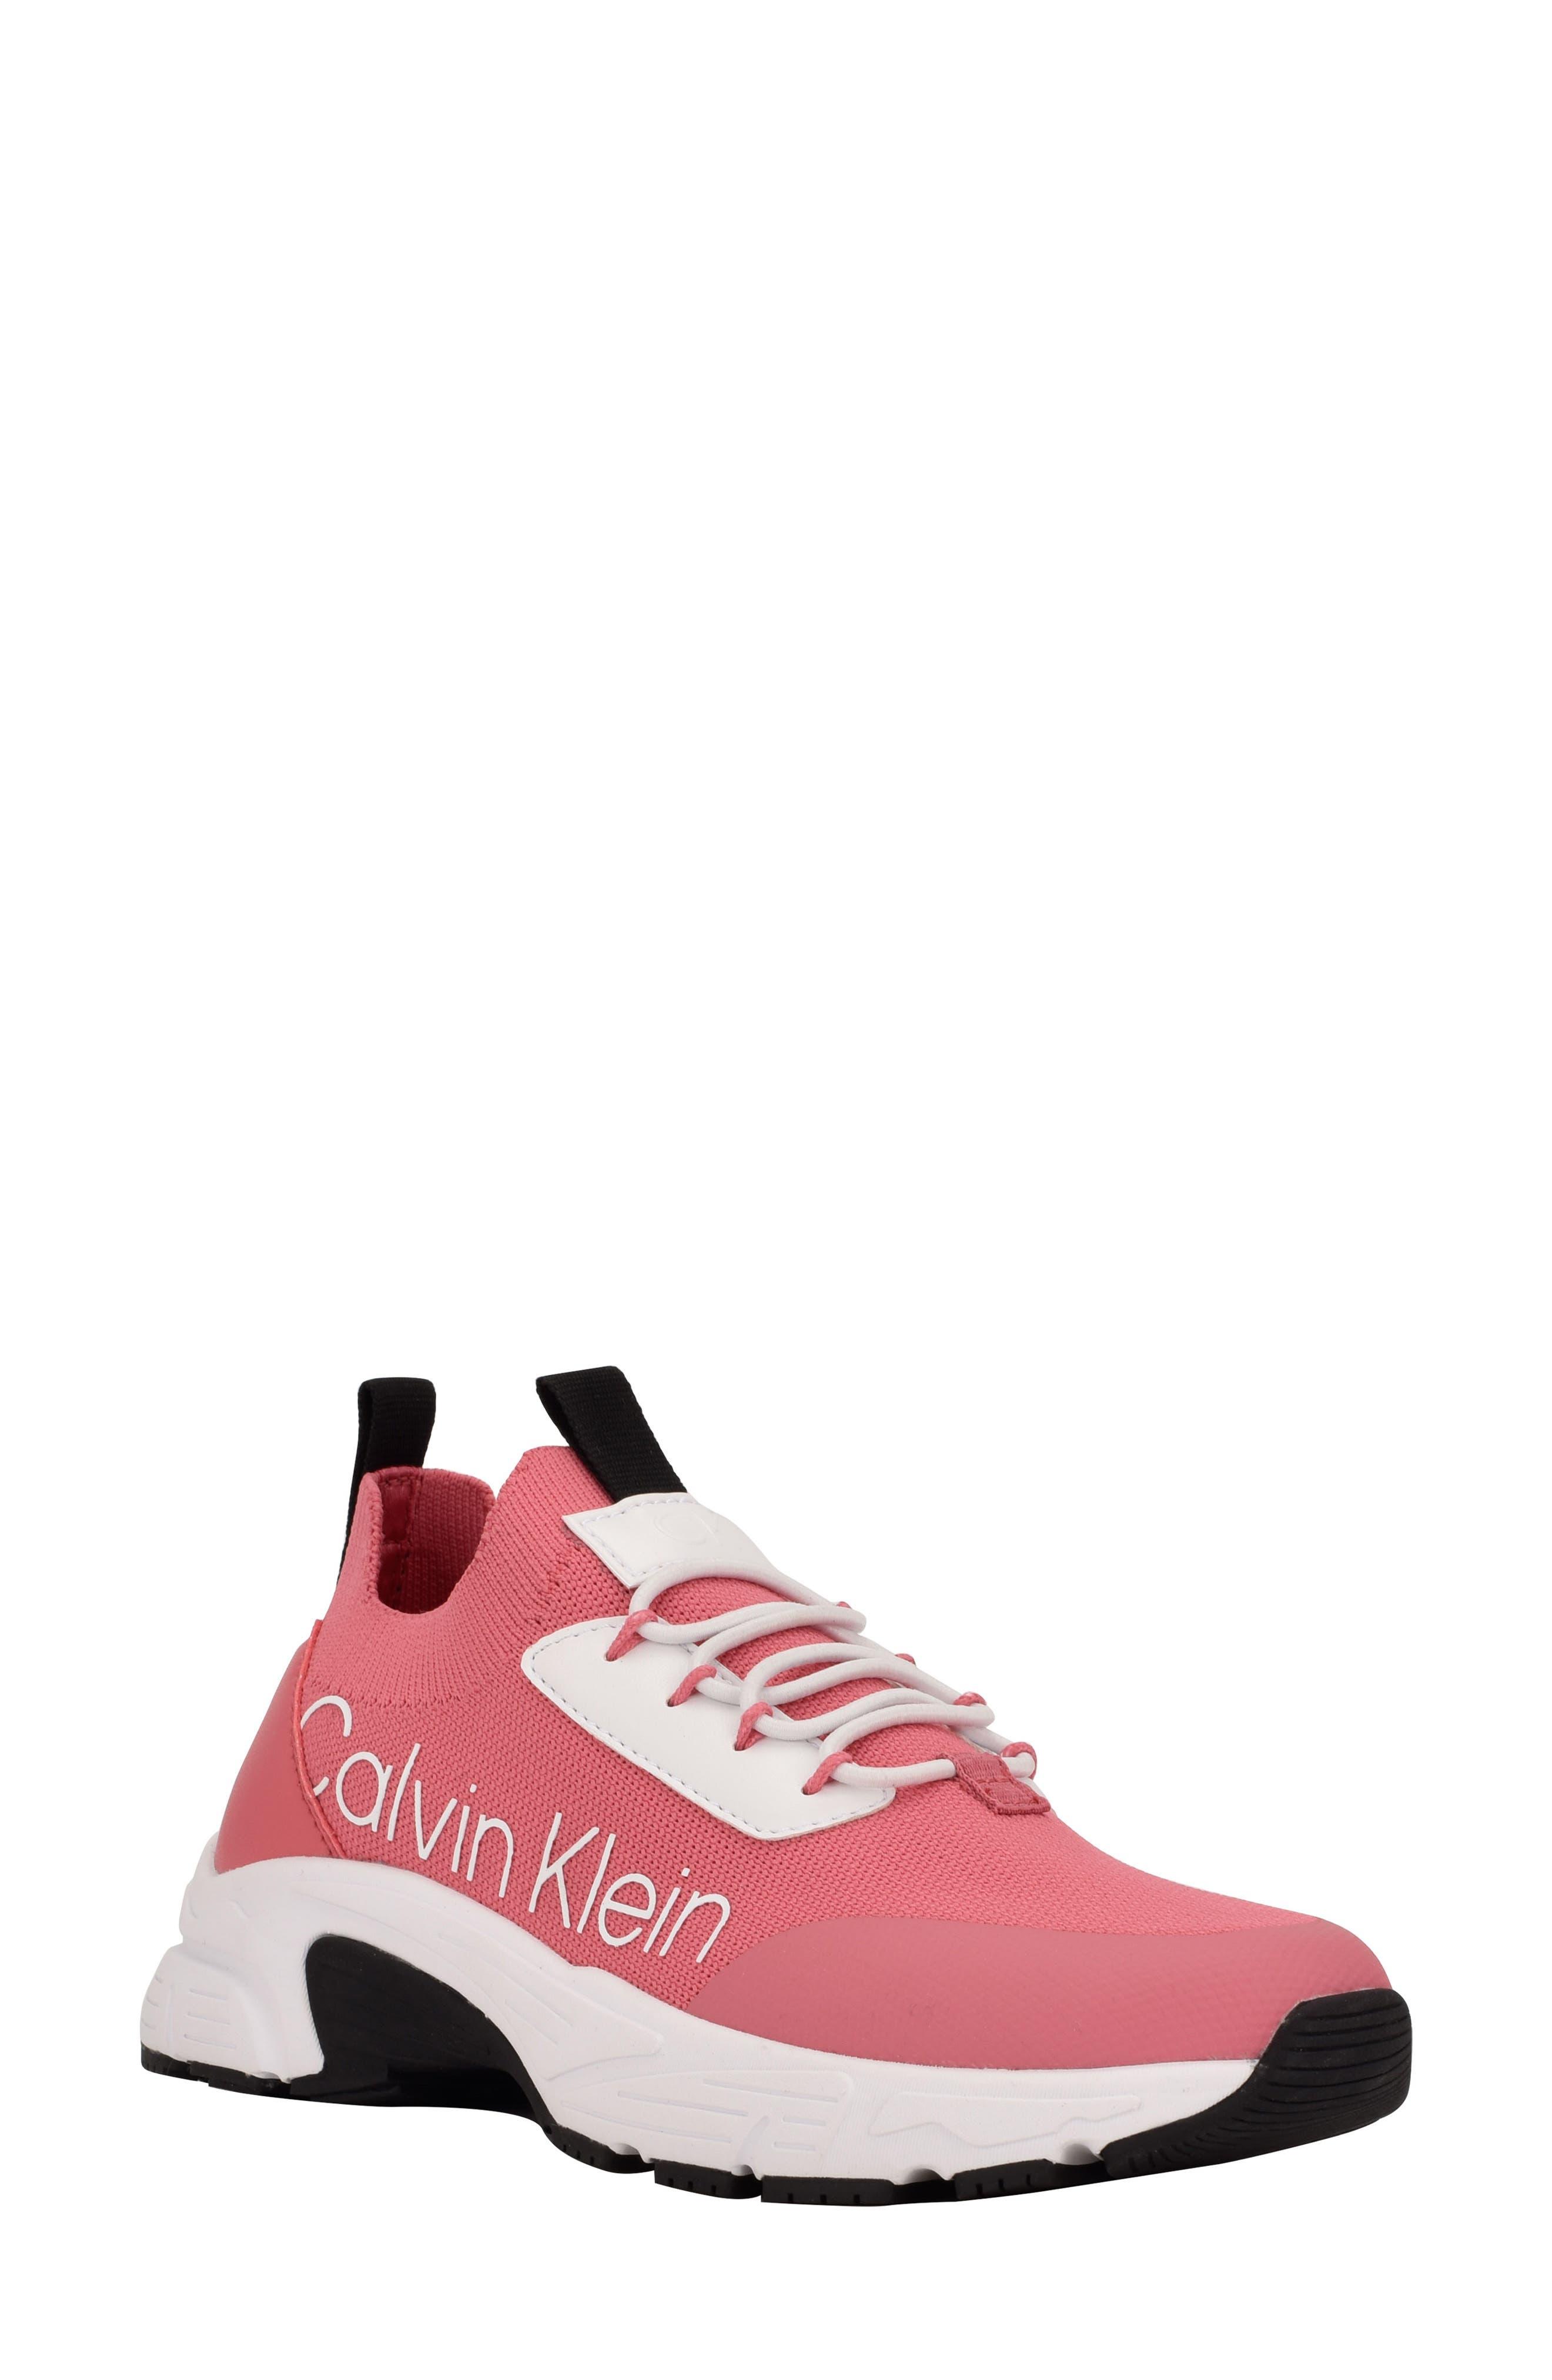 Calvin Klein Vianna Sneaker in Pink | Lyst